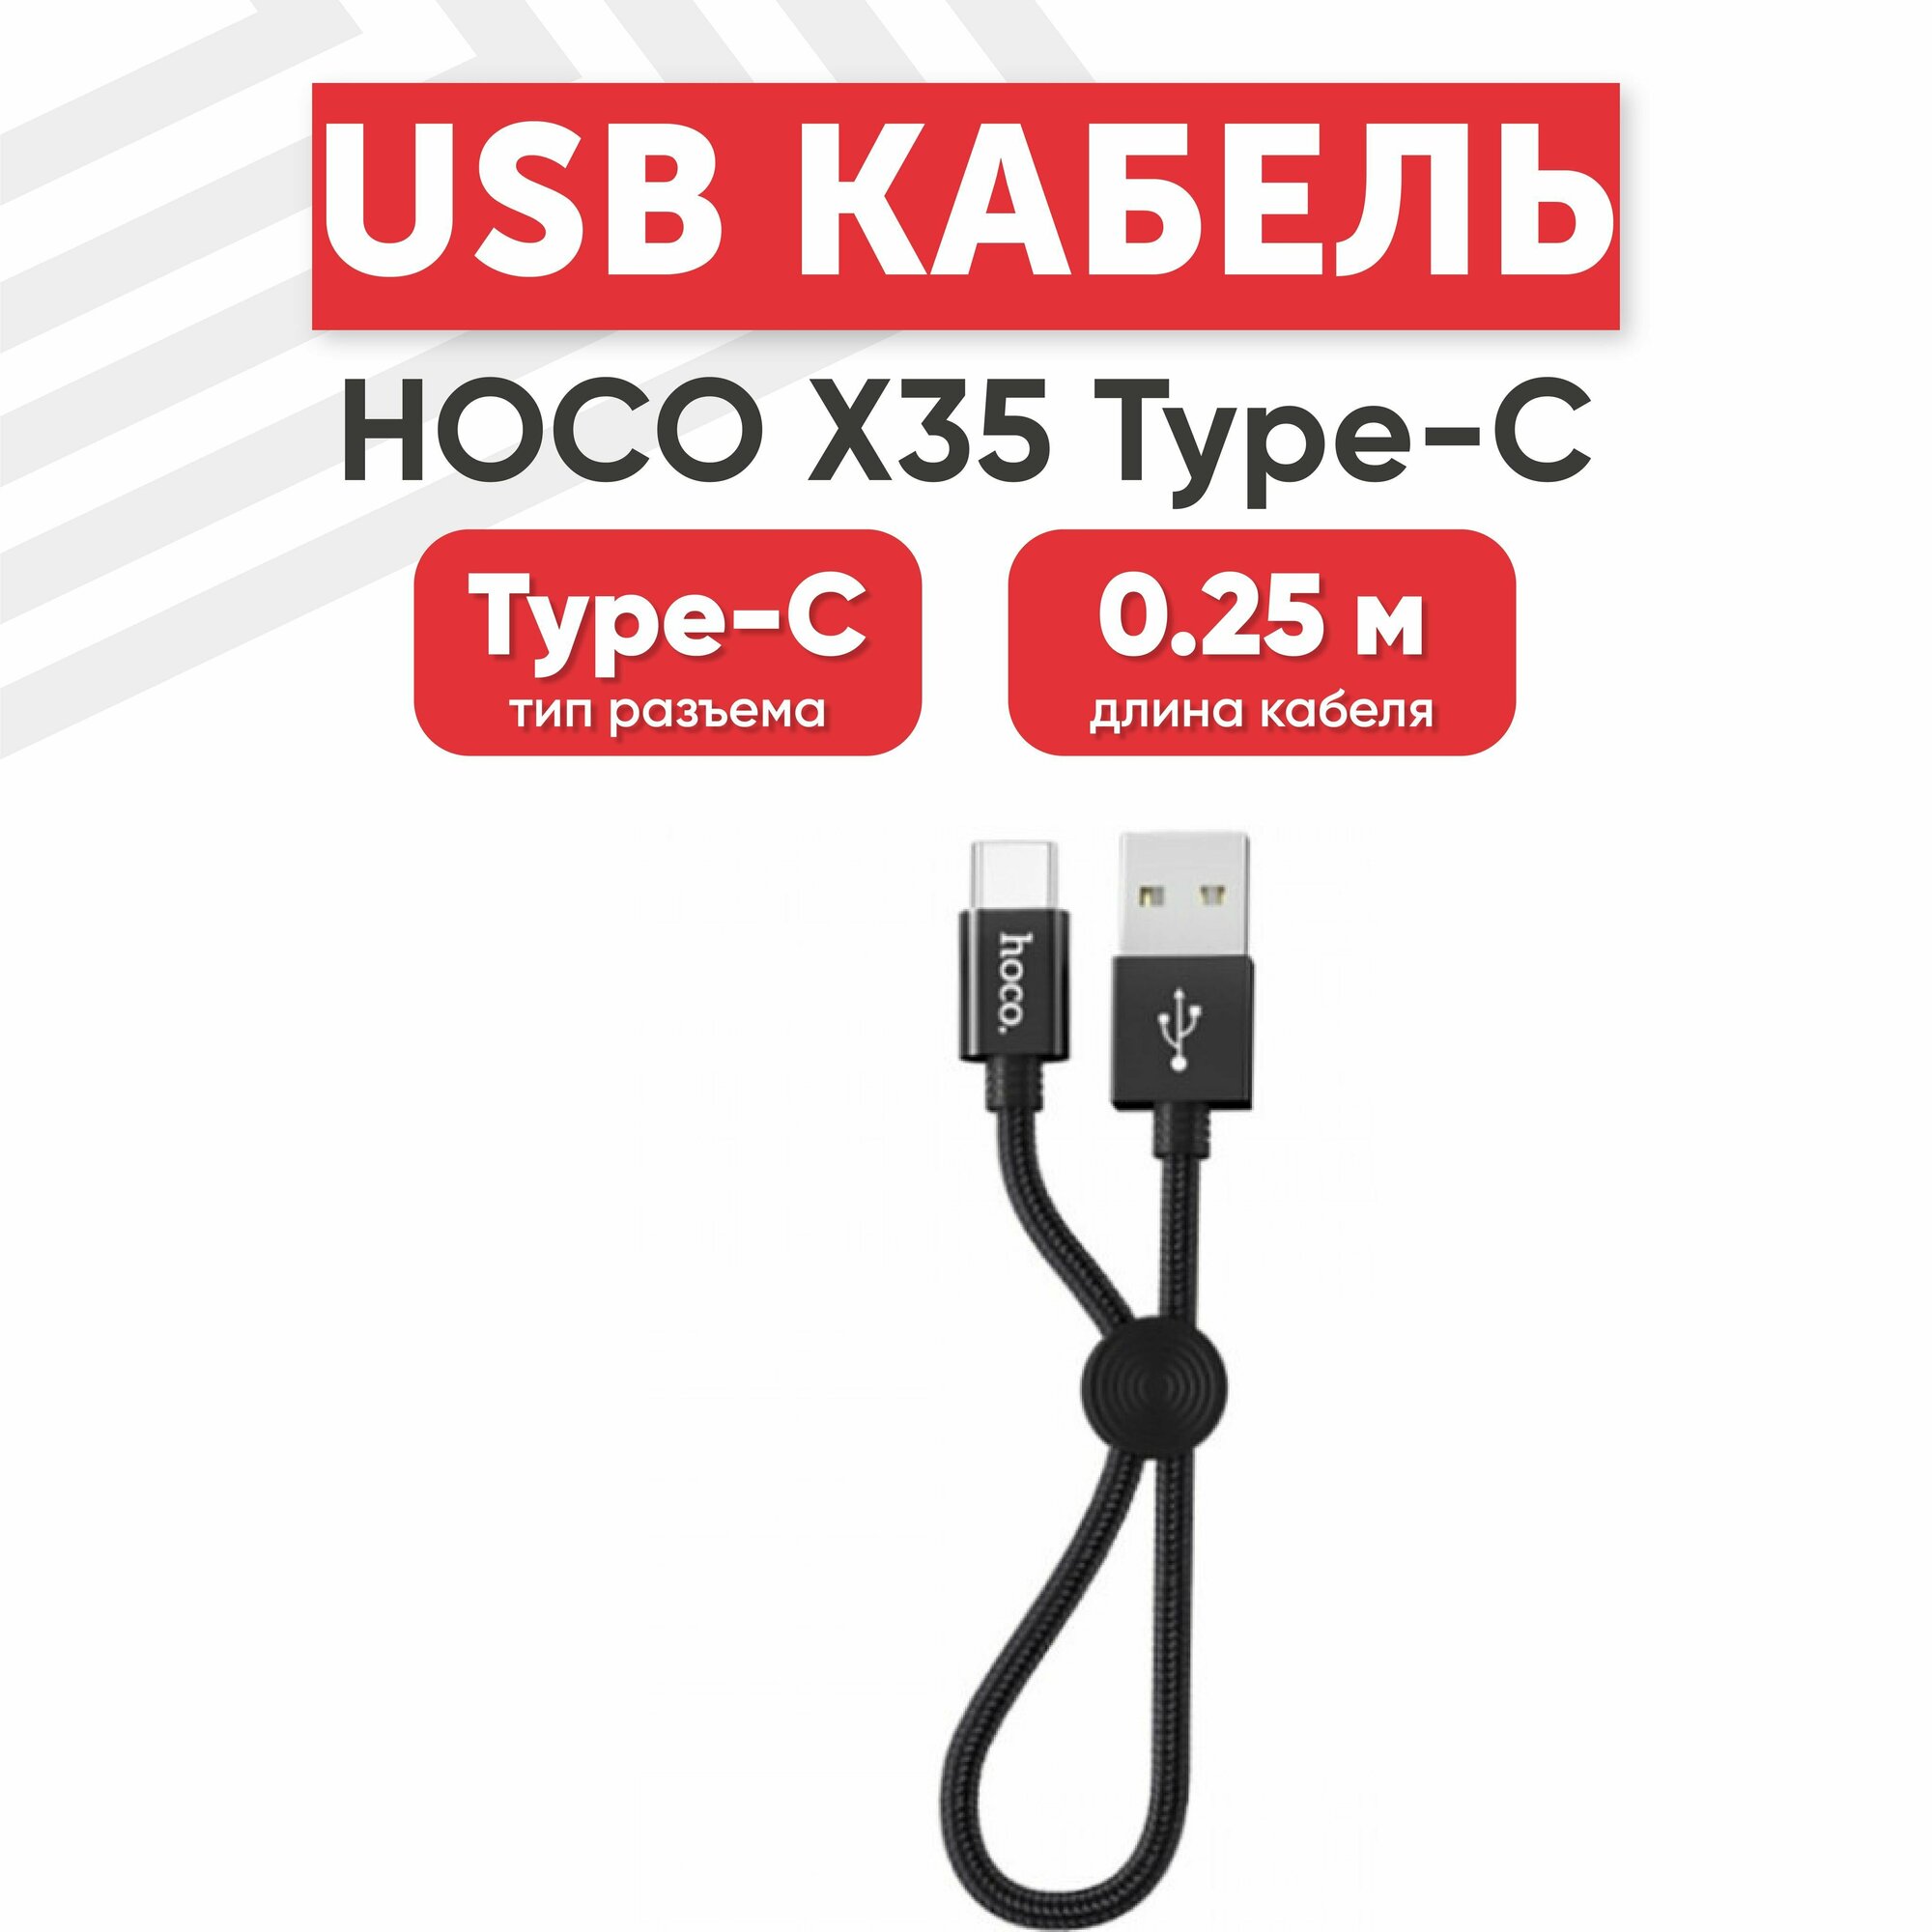 USB кабель Hoco X35 для зарядки, передачи данных, Type-C, 3А, 0.25 метра, нейлон, черный